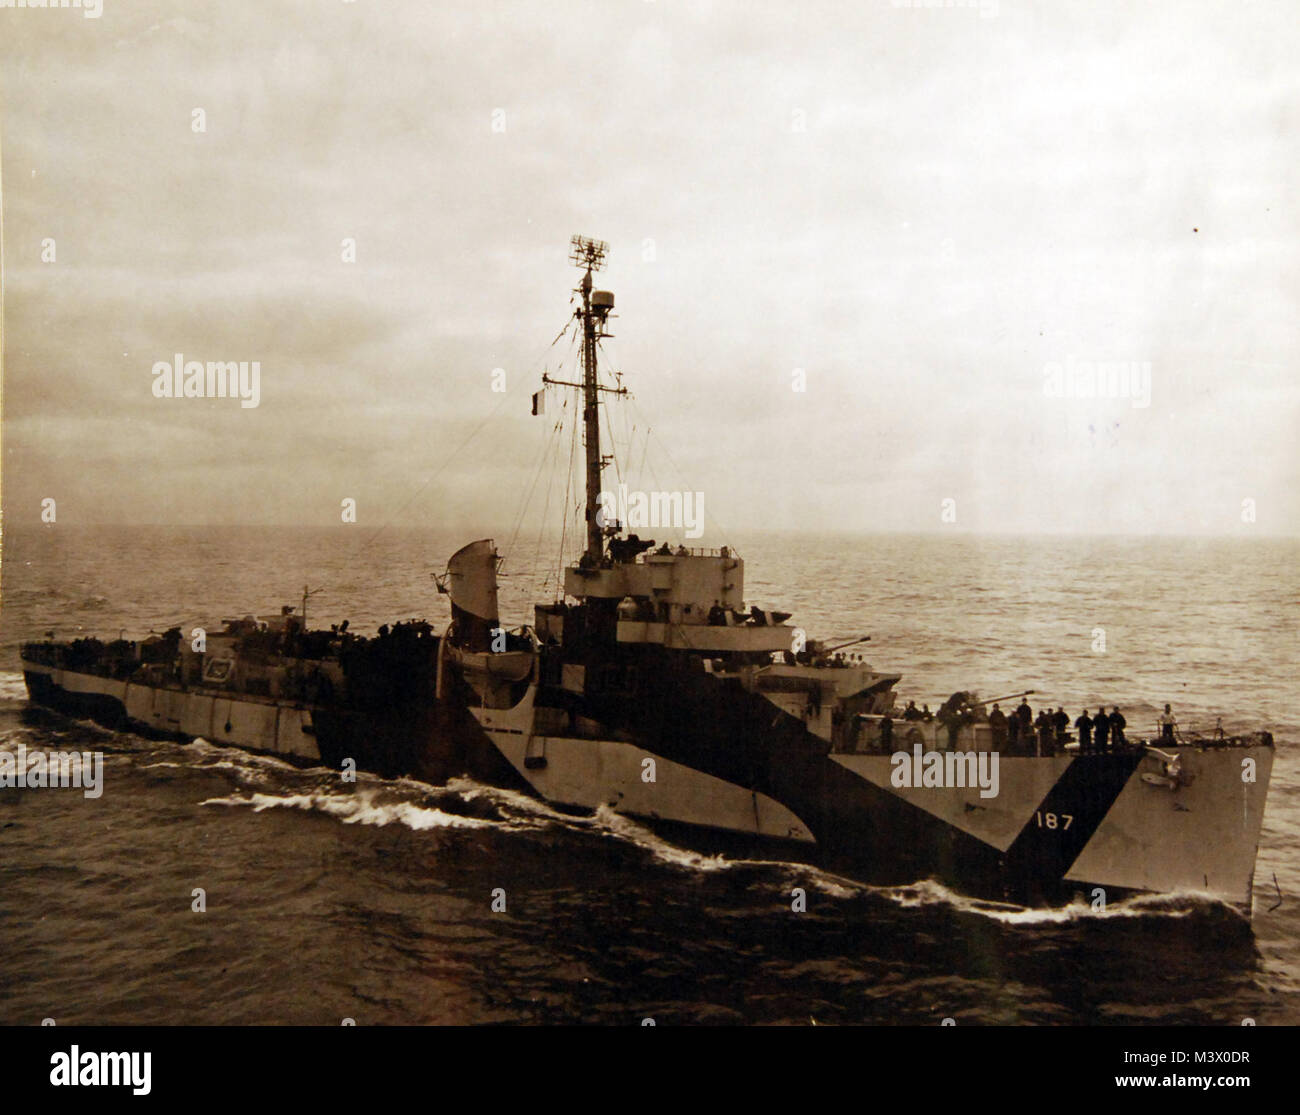 80-G-366251: USS Stern (DE-187) prese dalla USS Card (CVE-11), 26 aprile 1946. Ufficiale DEGLI STATI UNITI Fotografia della marina militare, ora nelle collezioni di archivi nazionali. (2018/01/31). 80-G -366251 40008535841 o Foto Stock